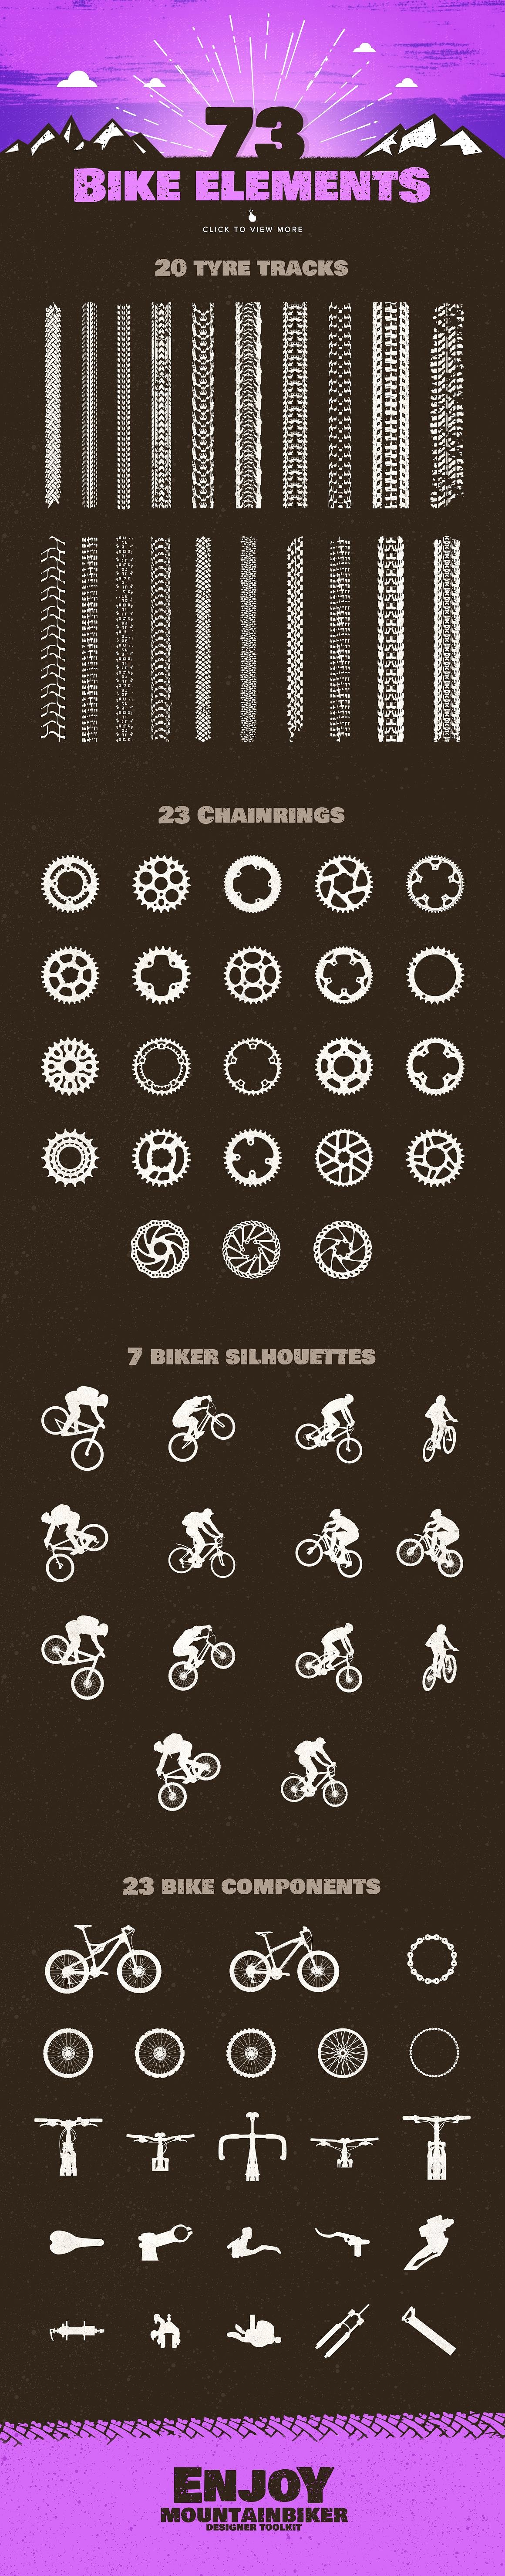 山地自行车极限运动品牌标志Logo模板 The-Mounta